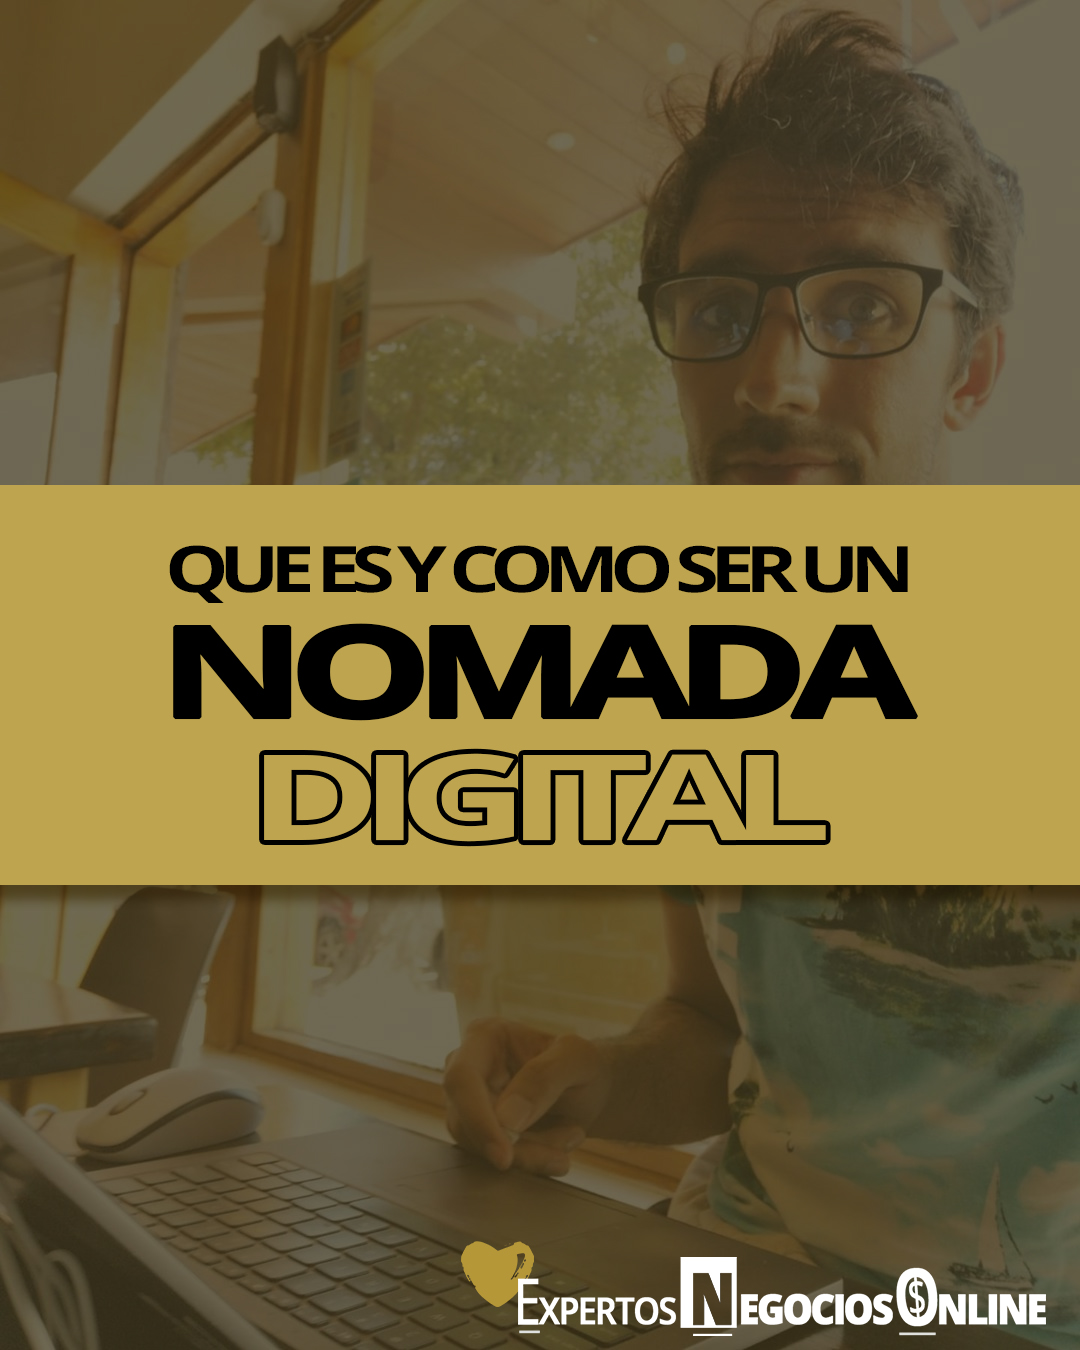 Qué es y cómo ser un nómada digital || Características y profesiones nómadas